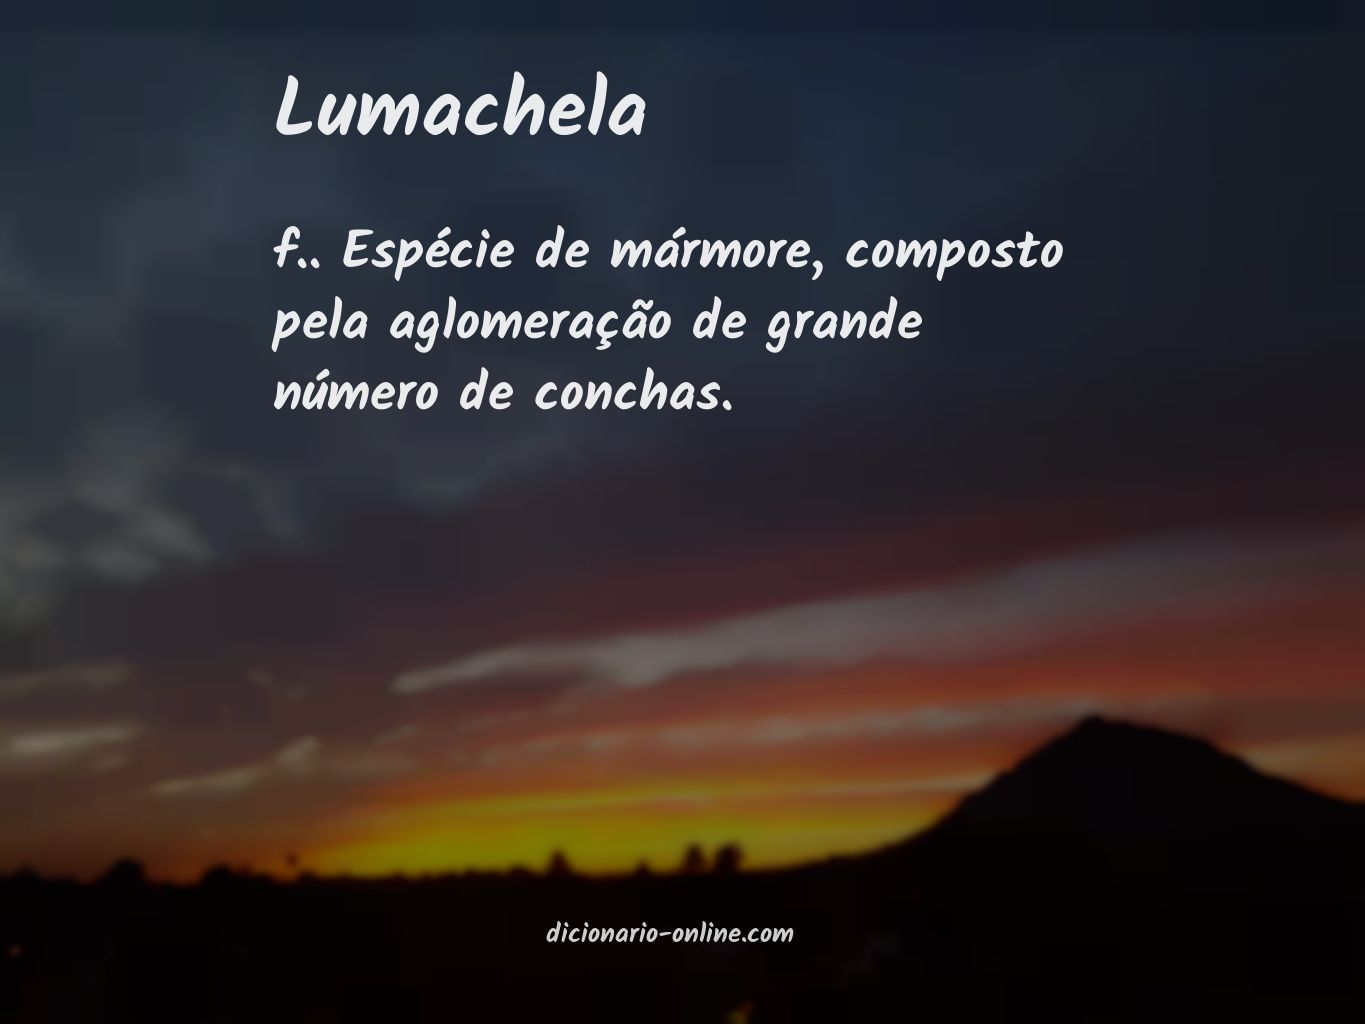 Significado de lumachela